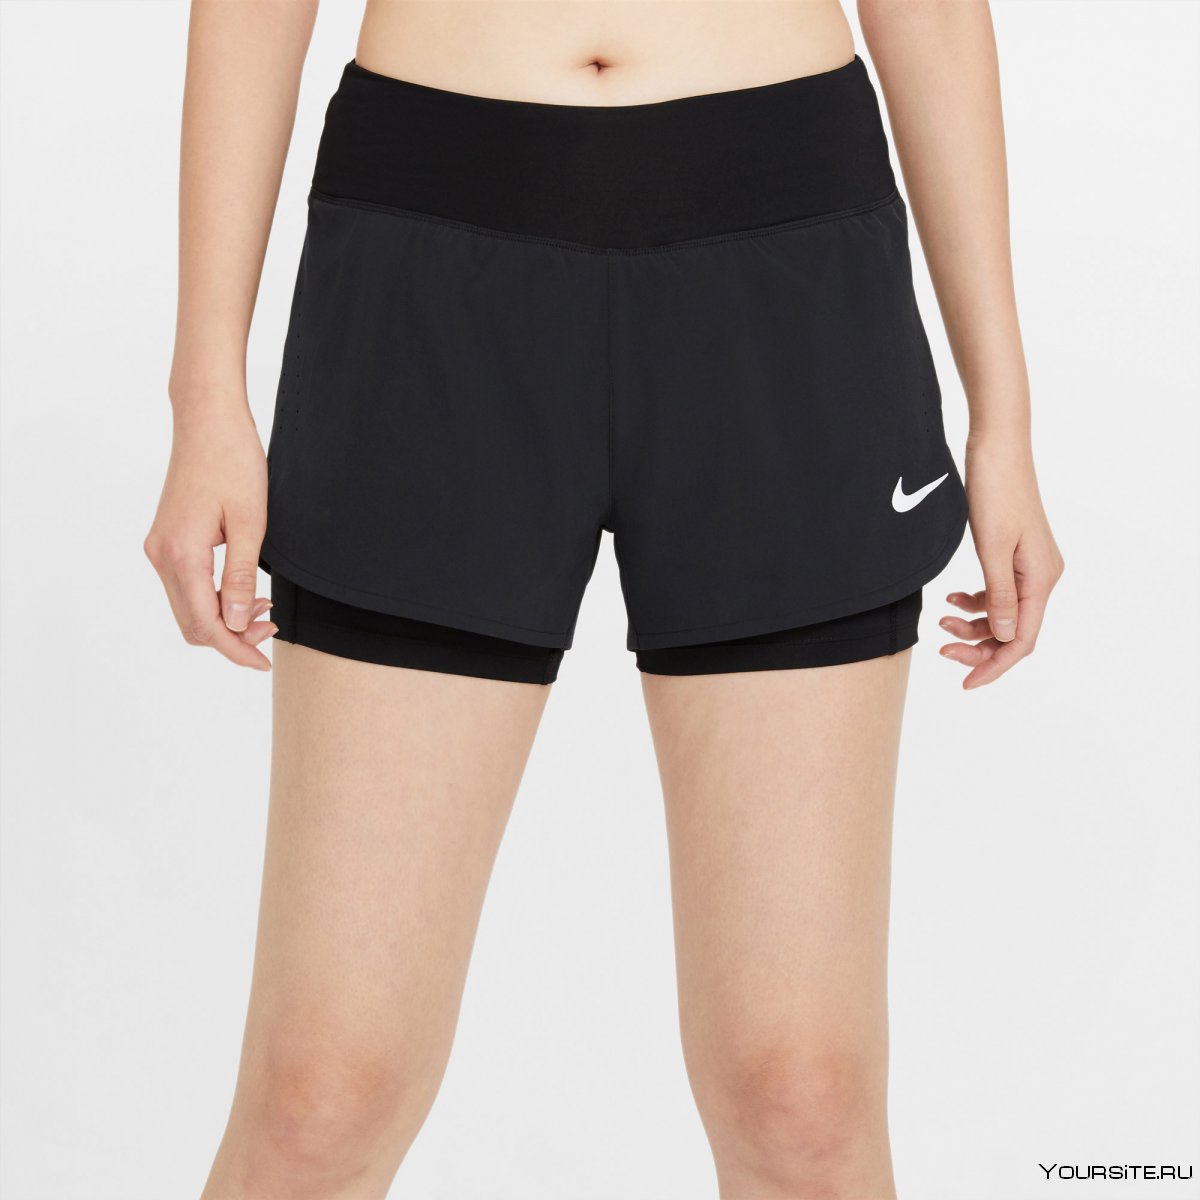 Cz9381-010 Nike shorts